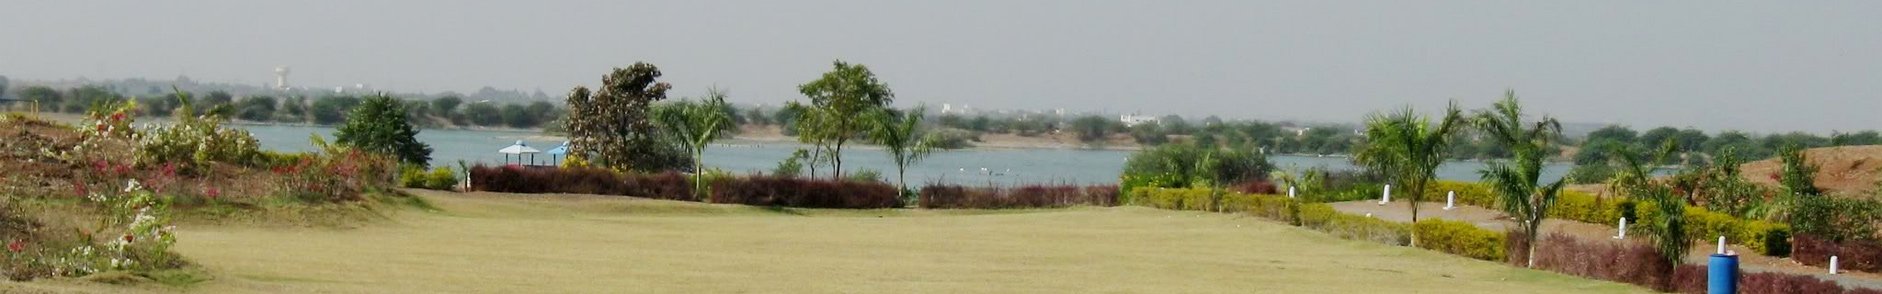 Aji Dam Rajkot, Gujarat